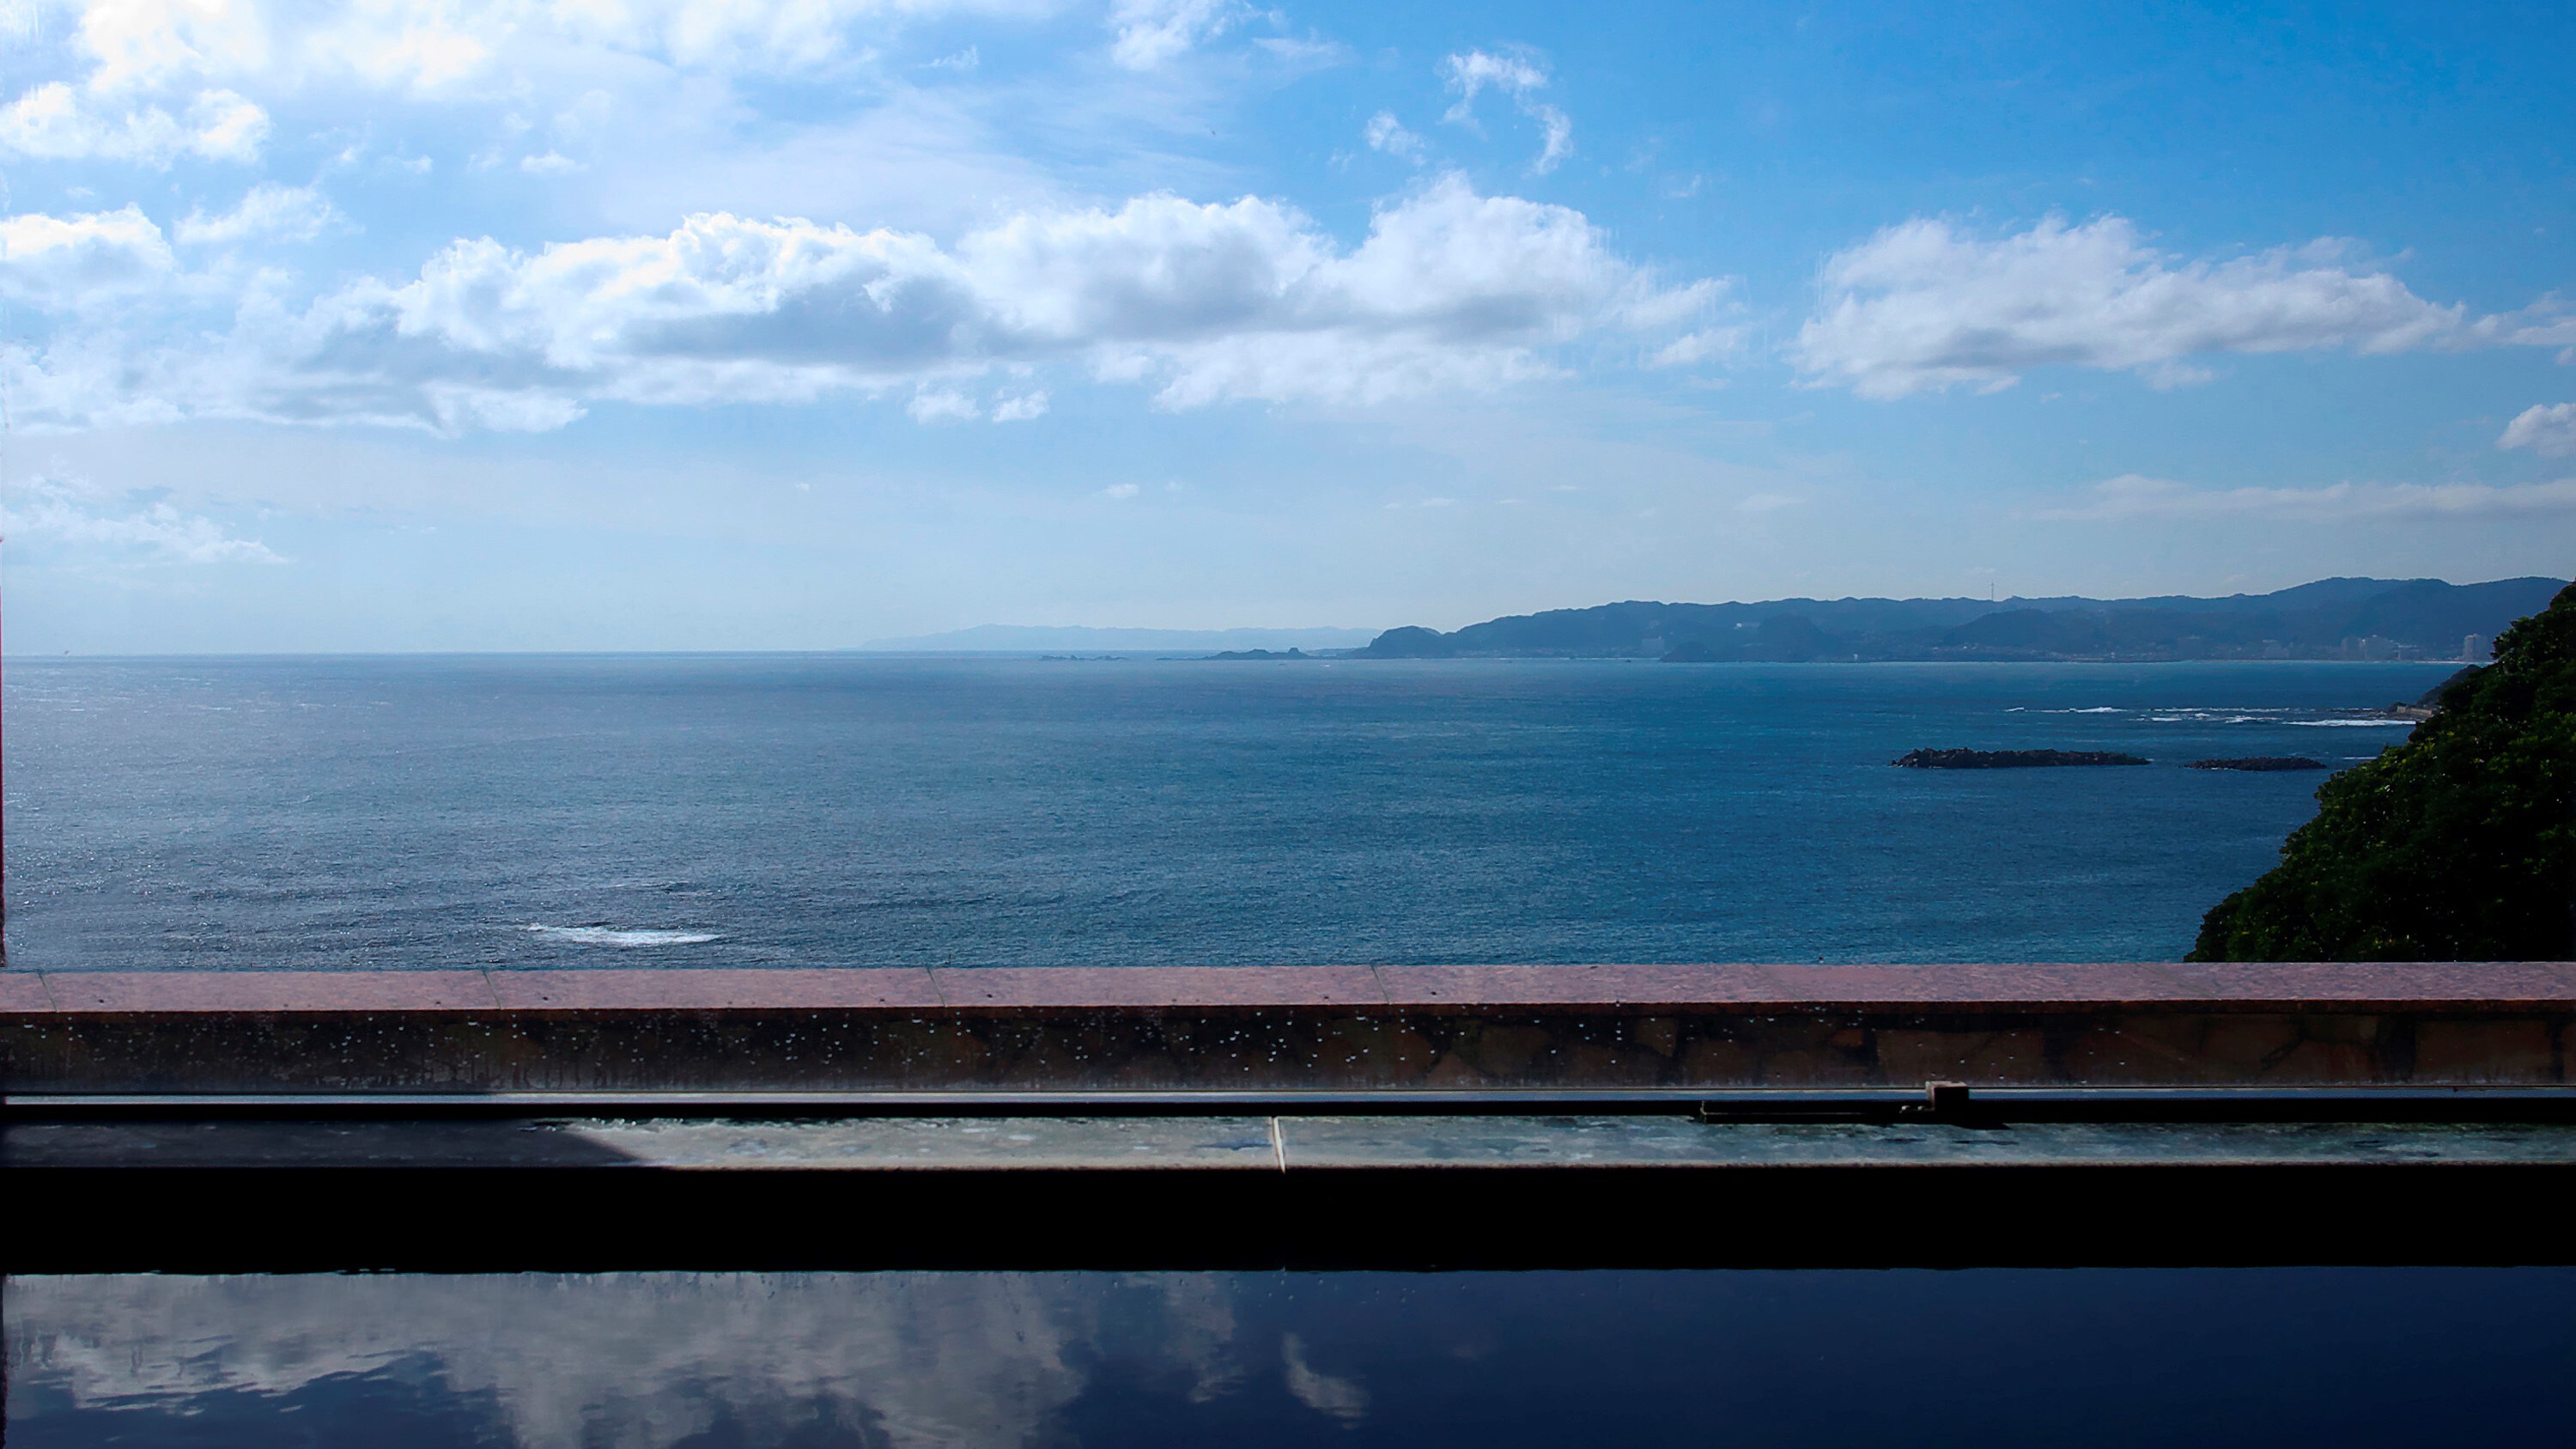 타워관 6층 전망 목욕탕에서는 태평양을 한눈에 볼 수 있습니다.